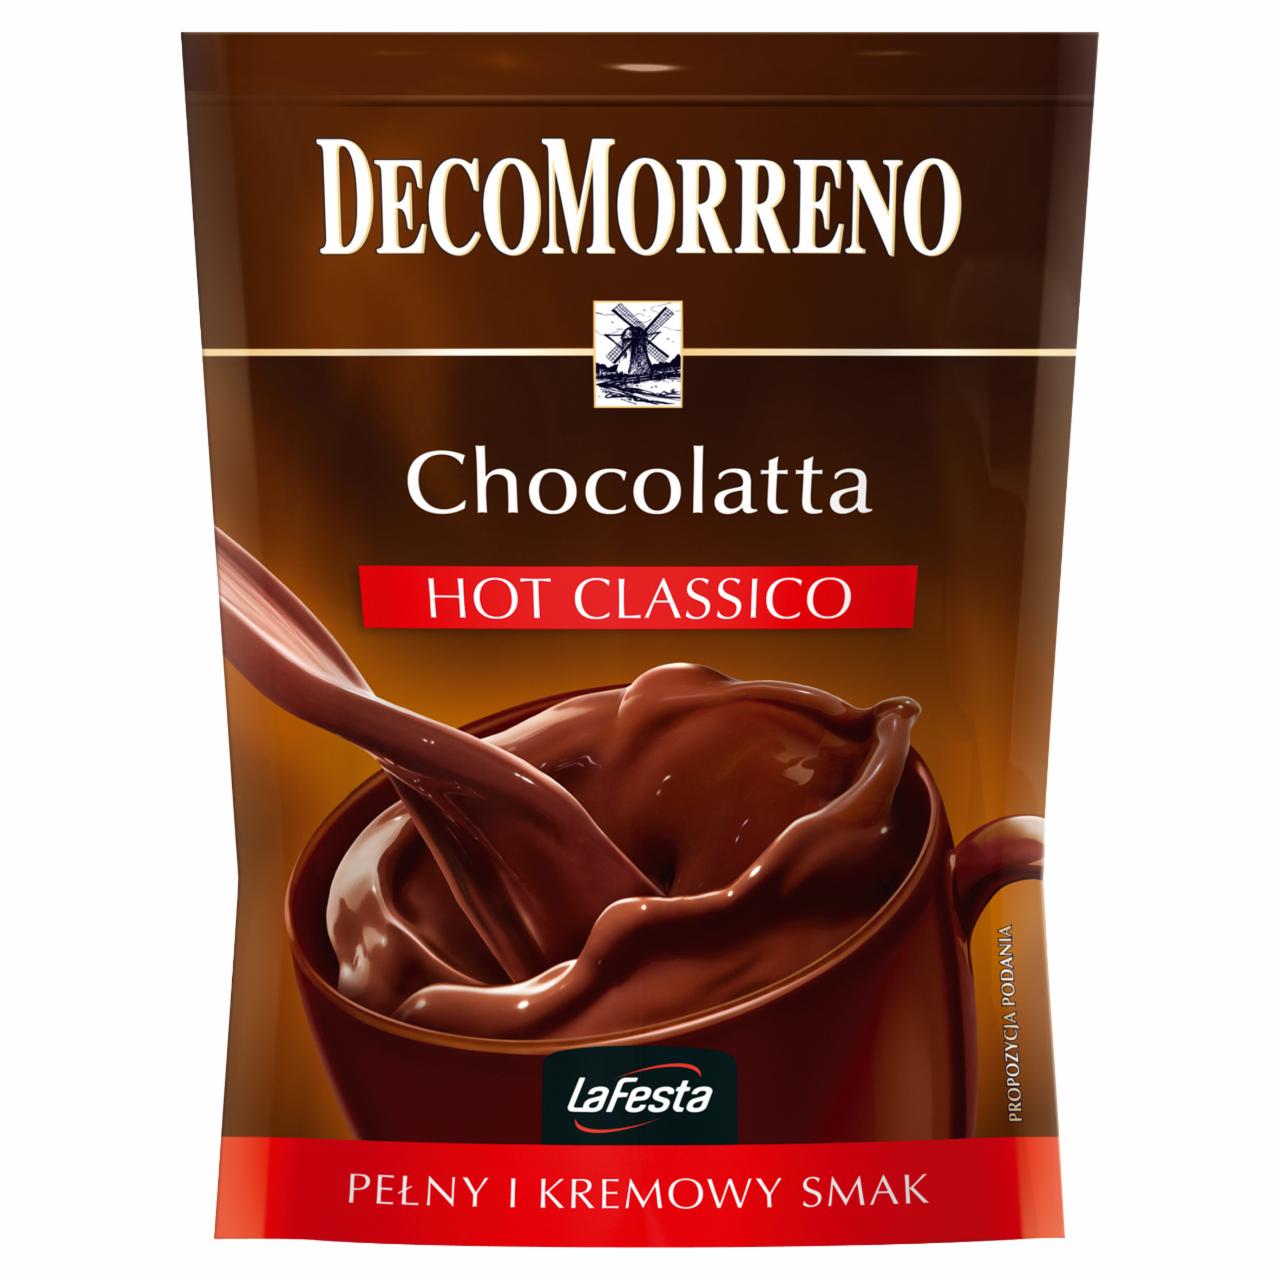 Zdjęcia - DecoMorreno Hot Classico Napój instant o smaku czekoladowym 150 g